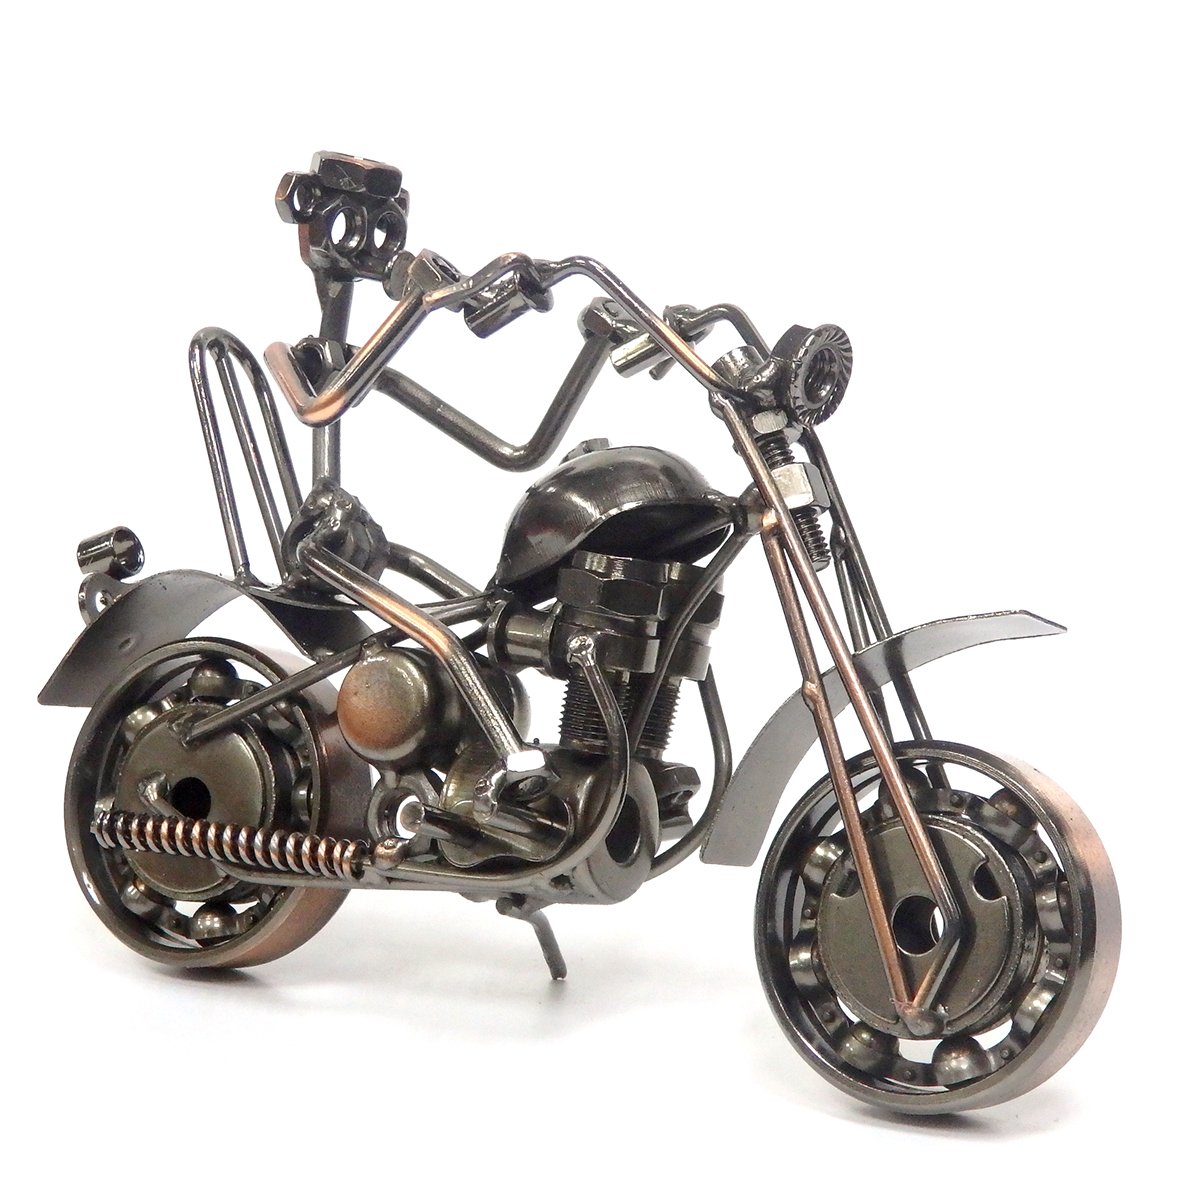 Фигурка мотоцикла из металла